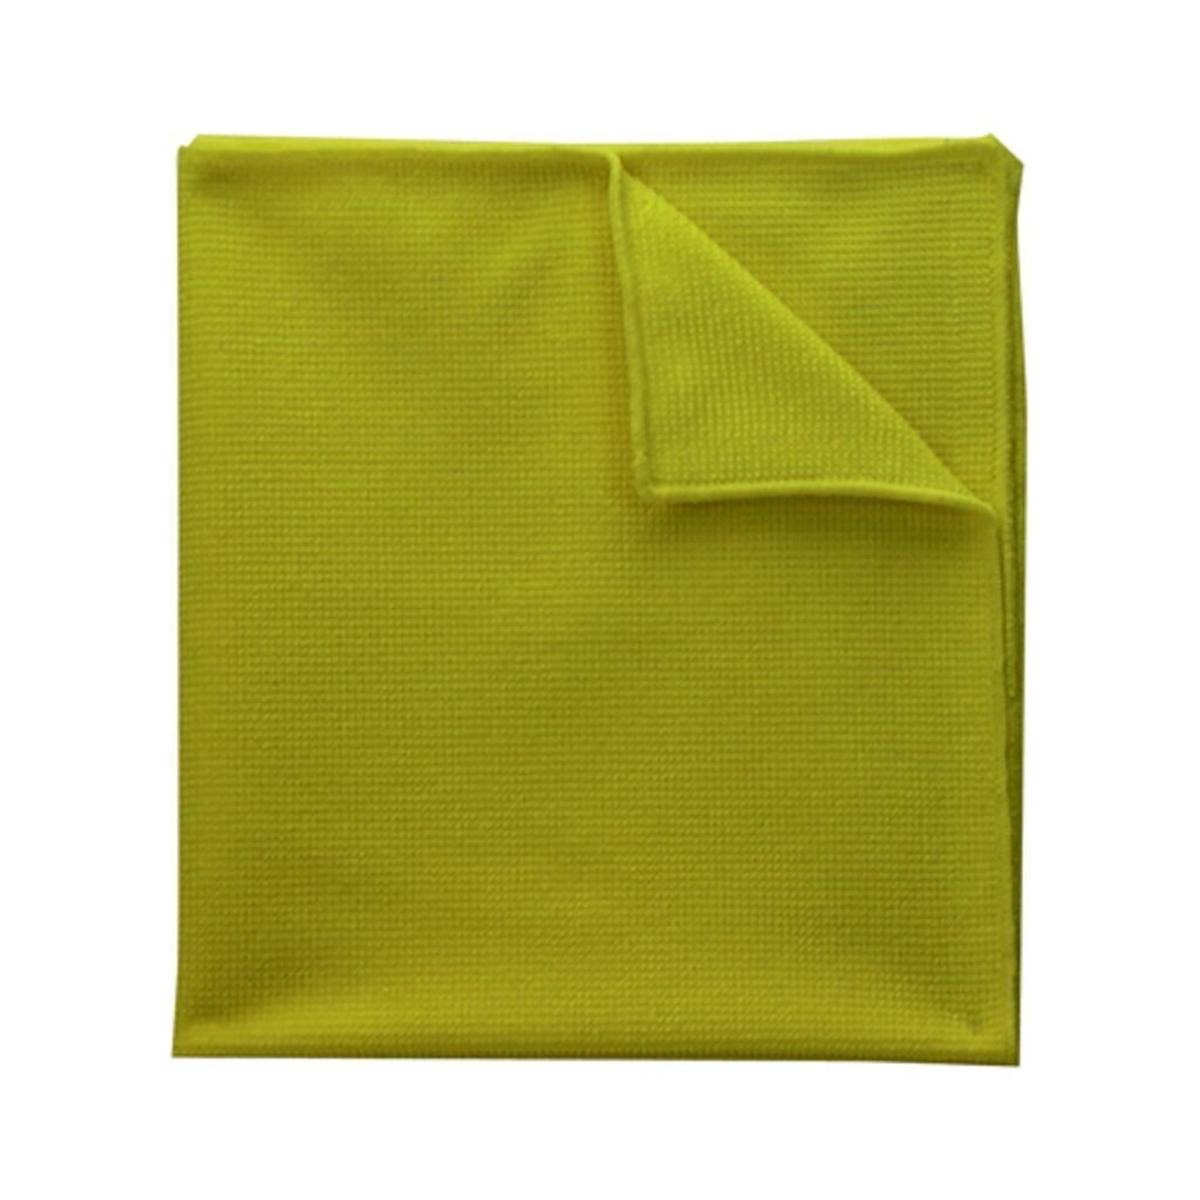 3M Scotch-Brite EssentEco microfibre cloth 2012, yellow, 360 mm x 360 mm